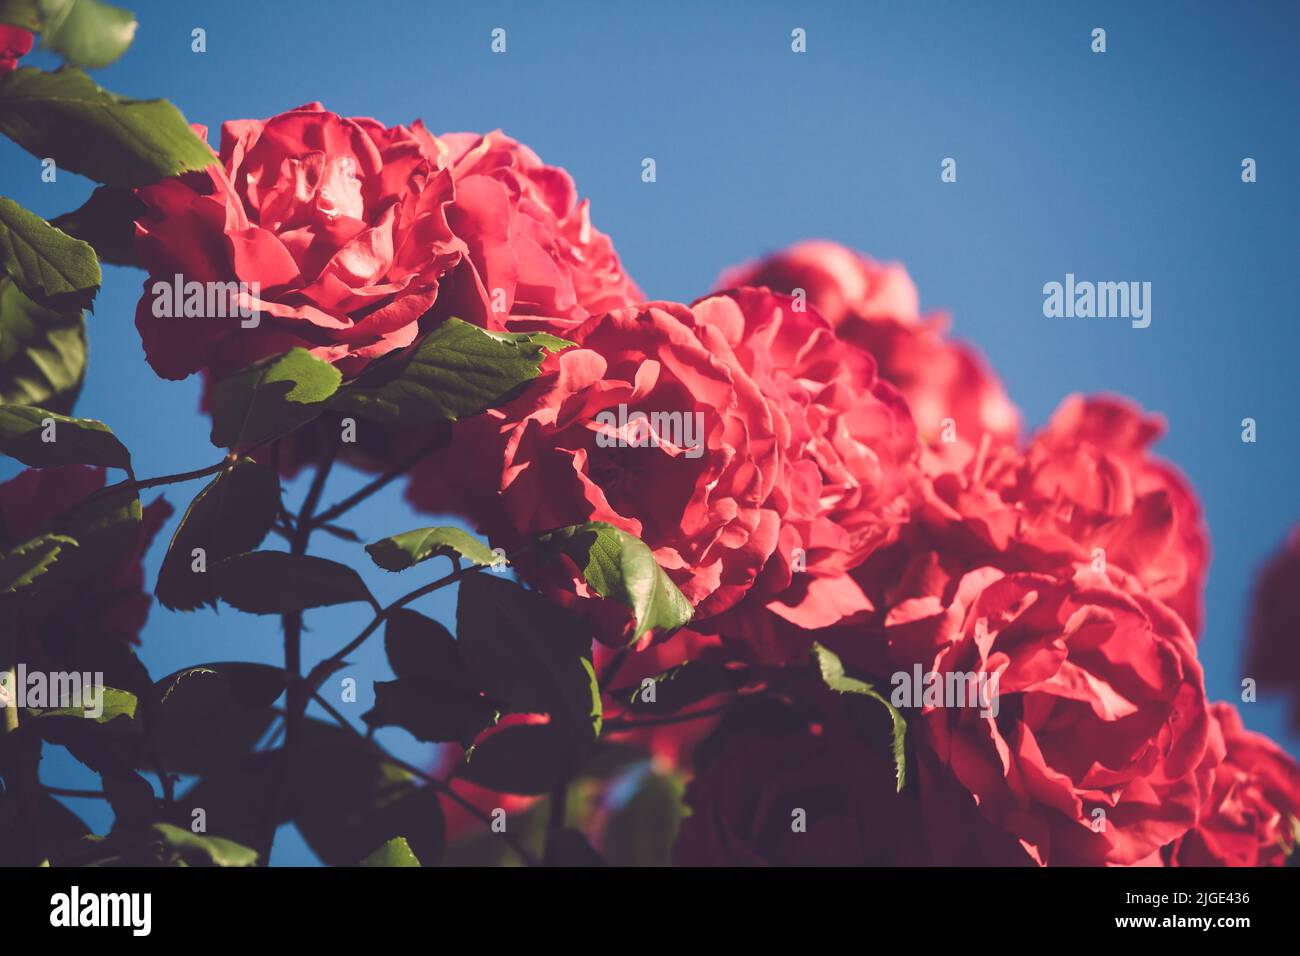 Rote Rosen im verblassten Vintage-Retro-Ton, geringe Schärfentiefe, Fokus auf zentralen Blütenblättern Stockfoto